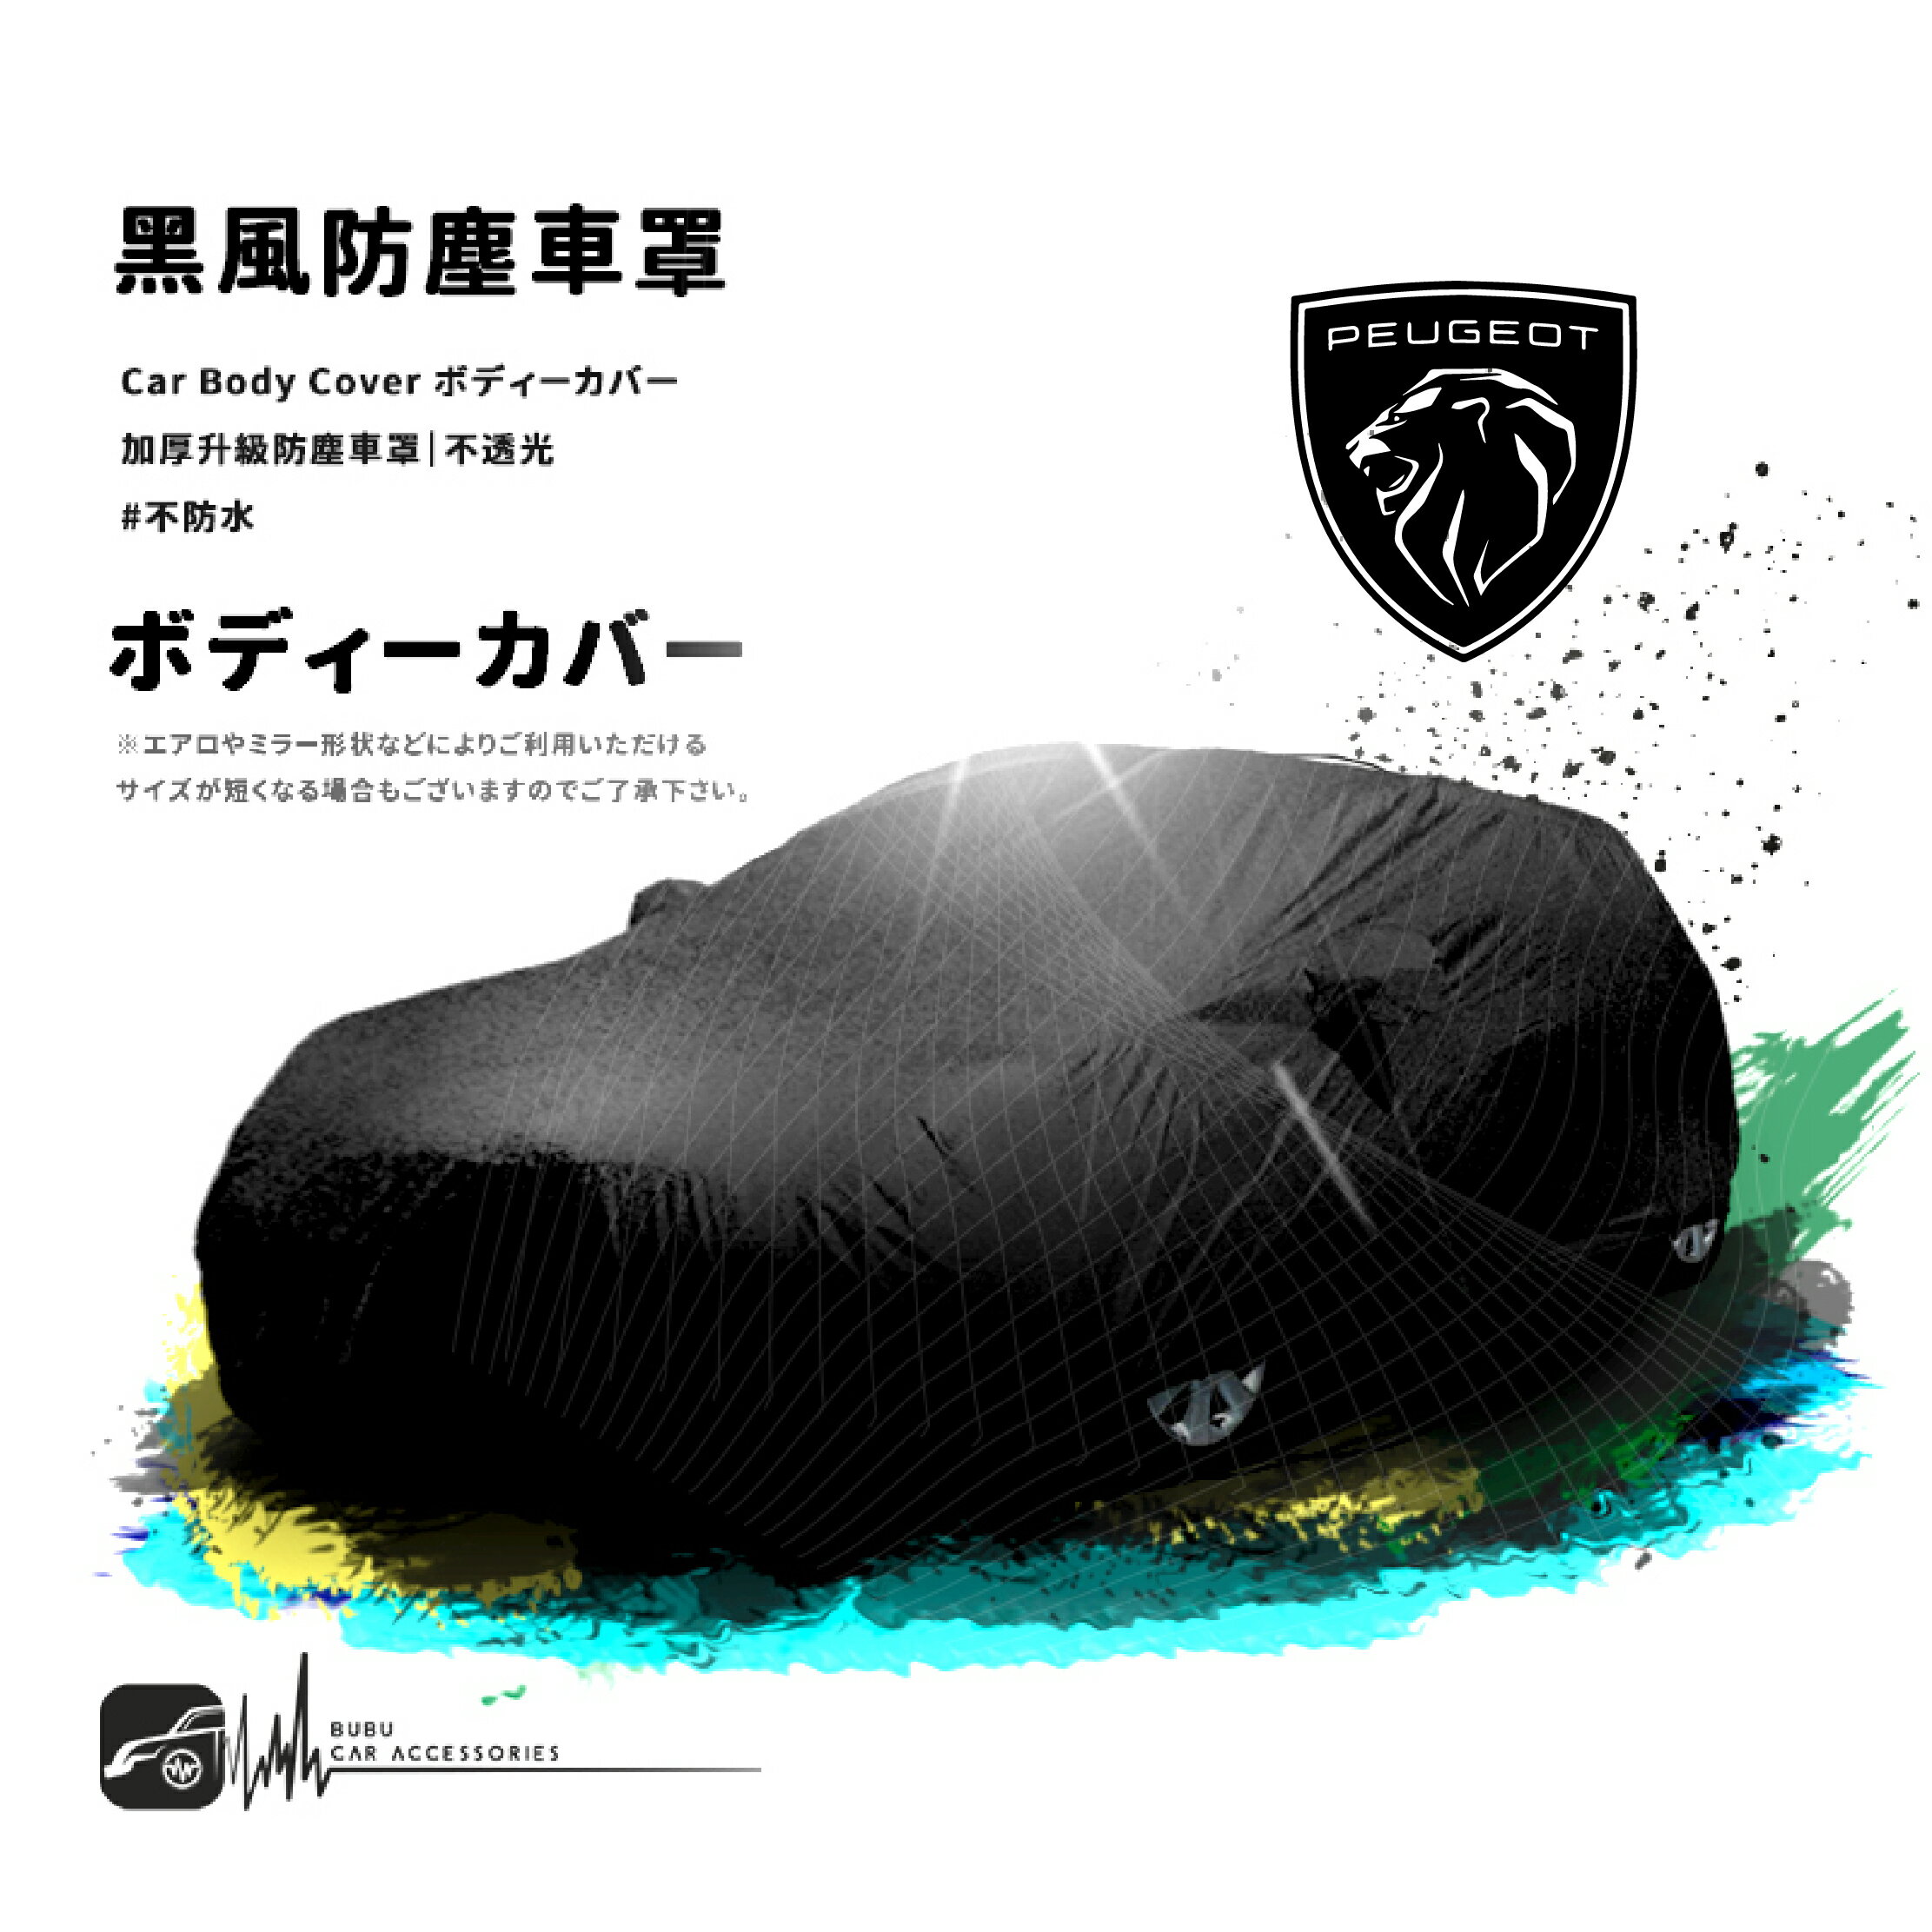 118【防塵黑風車罩】汽車車罩 適用於Peugeot 標誌 寶獅 107 205 206 207 306 407 607